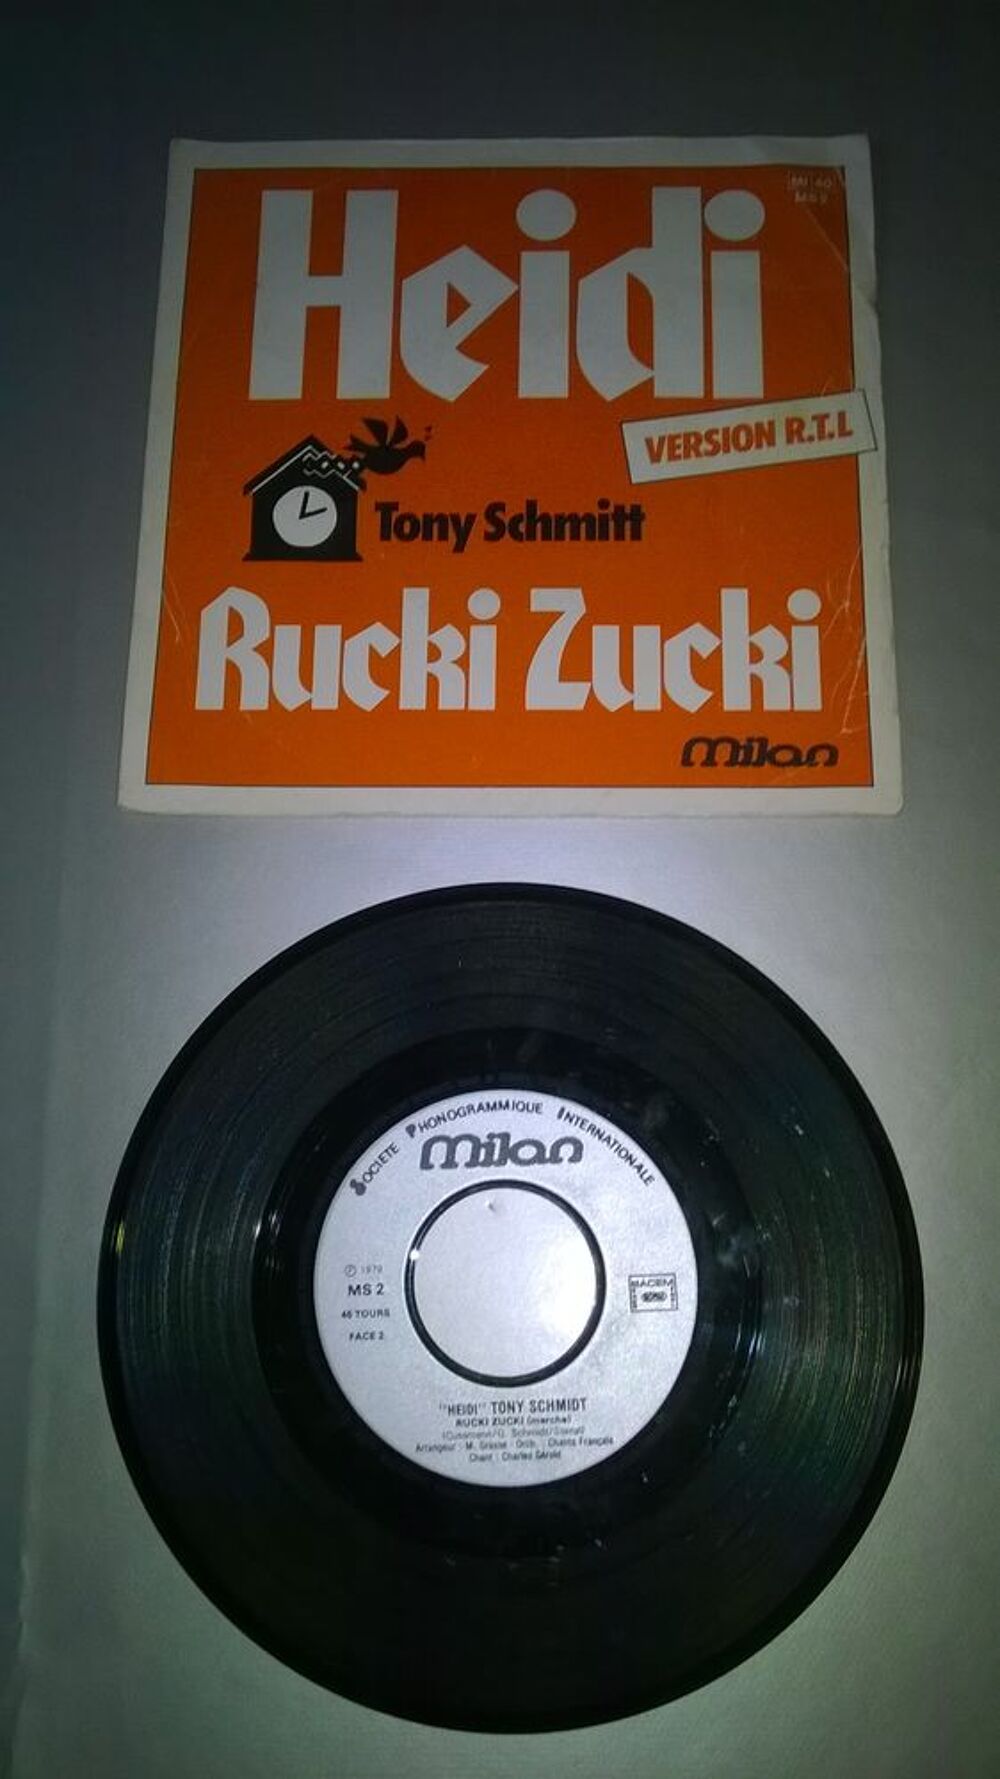 Vinyle 45 T Tony Schmitt 
Heidi 
1979
Bon etat
Heidi (M CD et vinyles